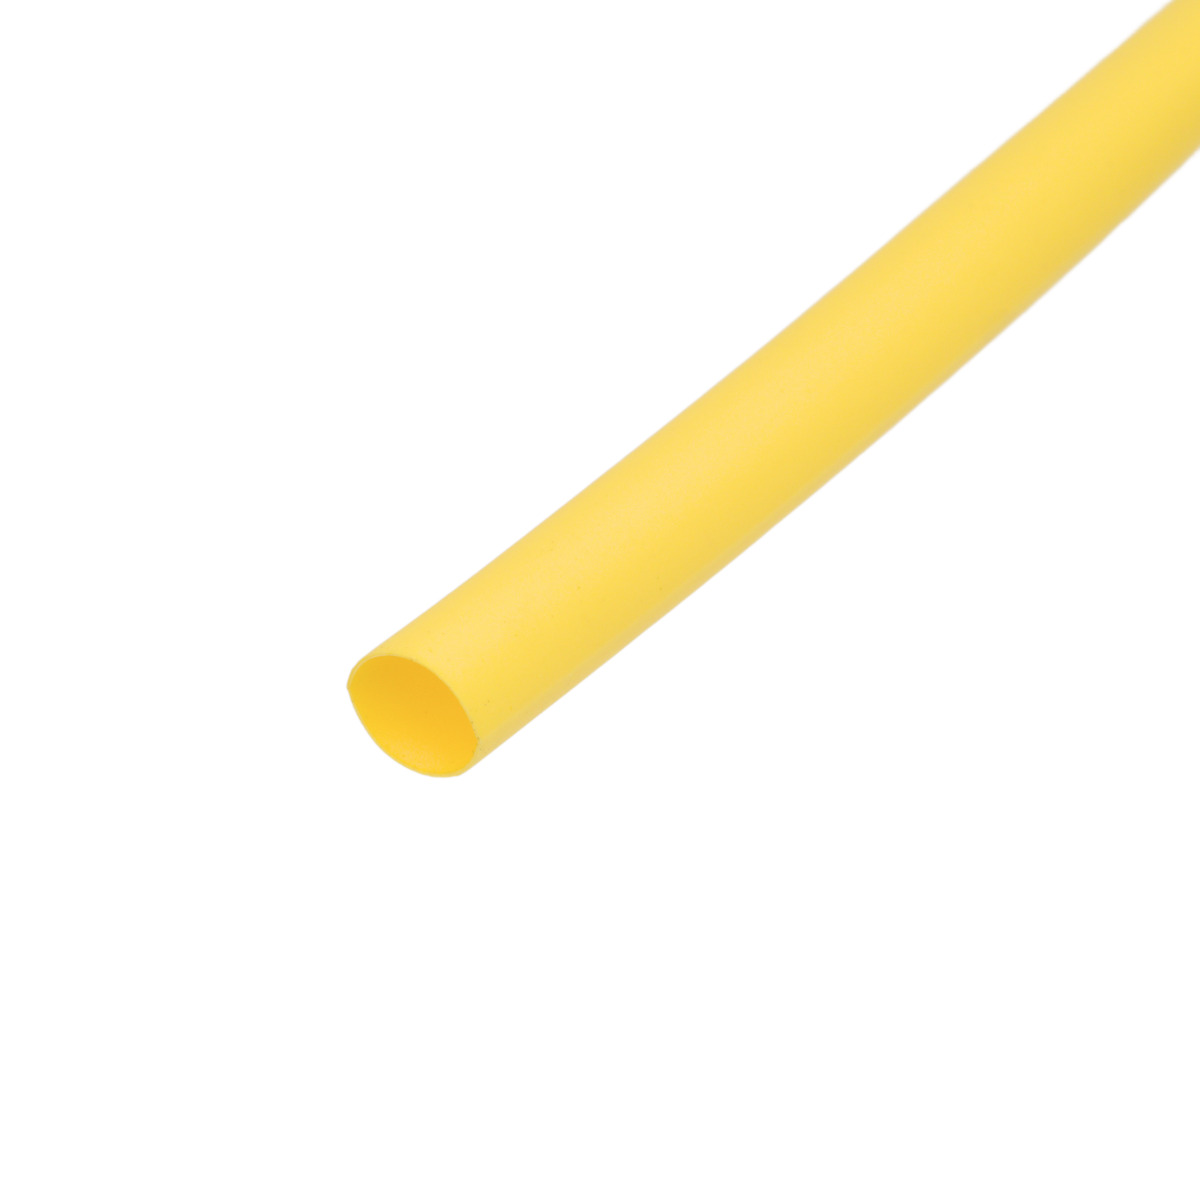 Pack de corte [1.2m] de tubo termorretráctil 2:1 Ø38.1mm amarillo – Poliolefina libre de halógeno e ignífugo [x5]